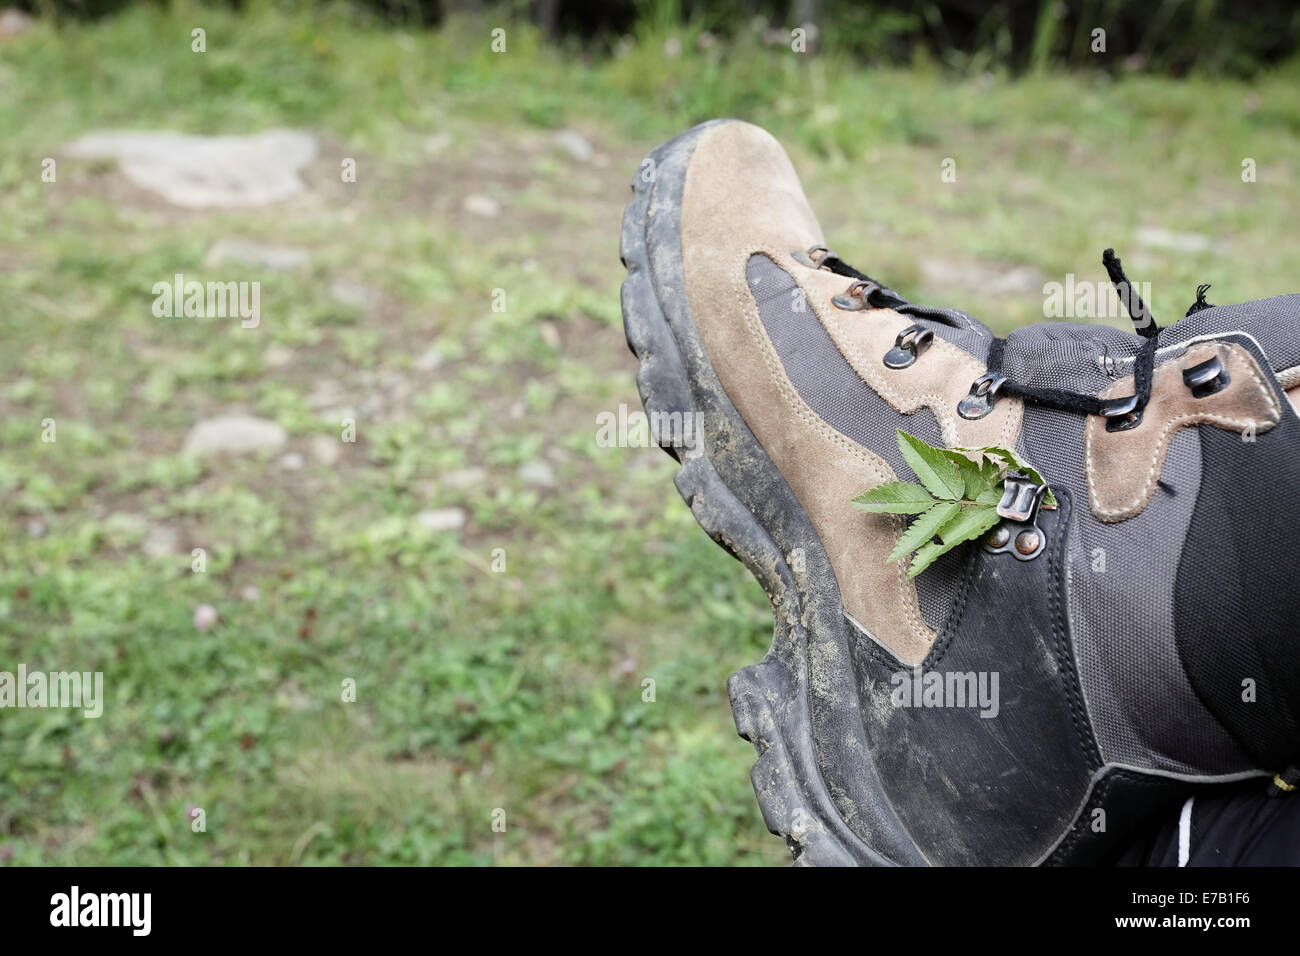 Dirty brown chaussures de randonnée en montagne avec une petite branche  pris dans les lacets Photo Stock - Alamy